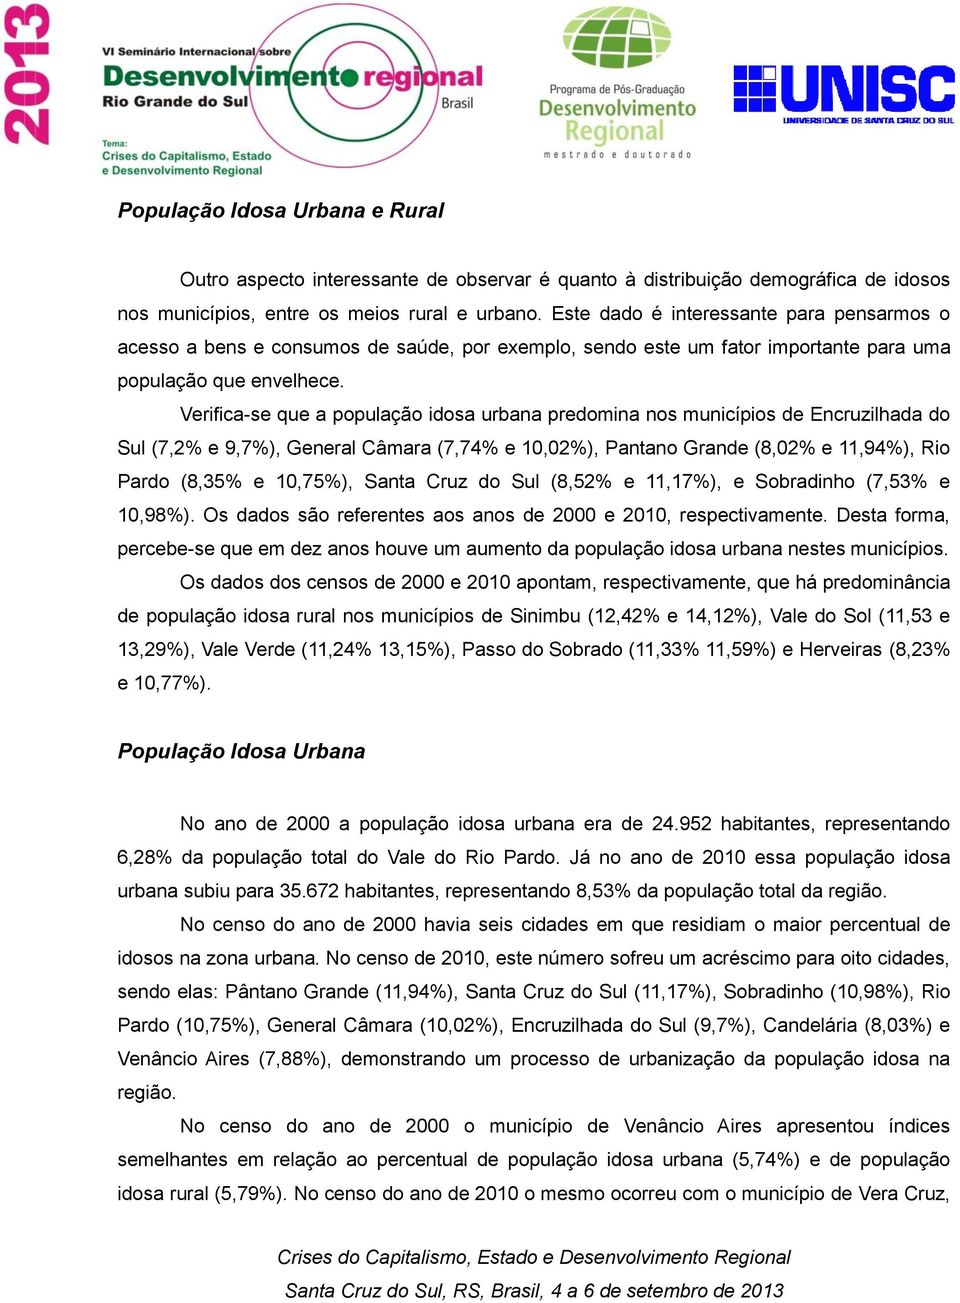 Verifica-se que a população idosa urbana predomina nos municípios de Encruzilhada do Sul (7,2% e 9,7%), General Câmara (7,74% e 10,02%), Pantano Grande (8,02% e 11,94%), Rio Pardo (8,35% e 10,75%),